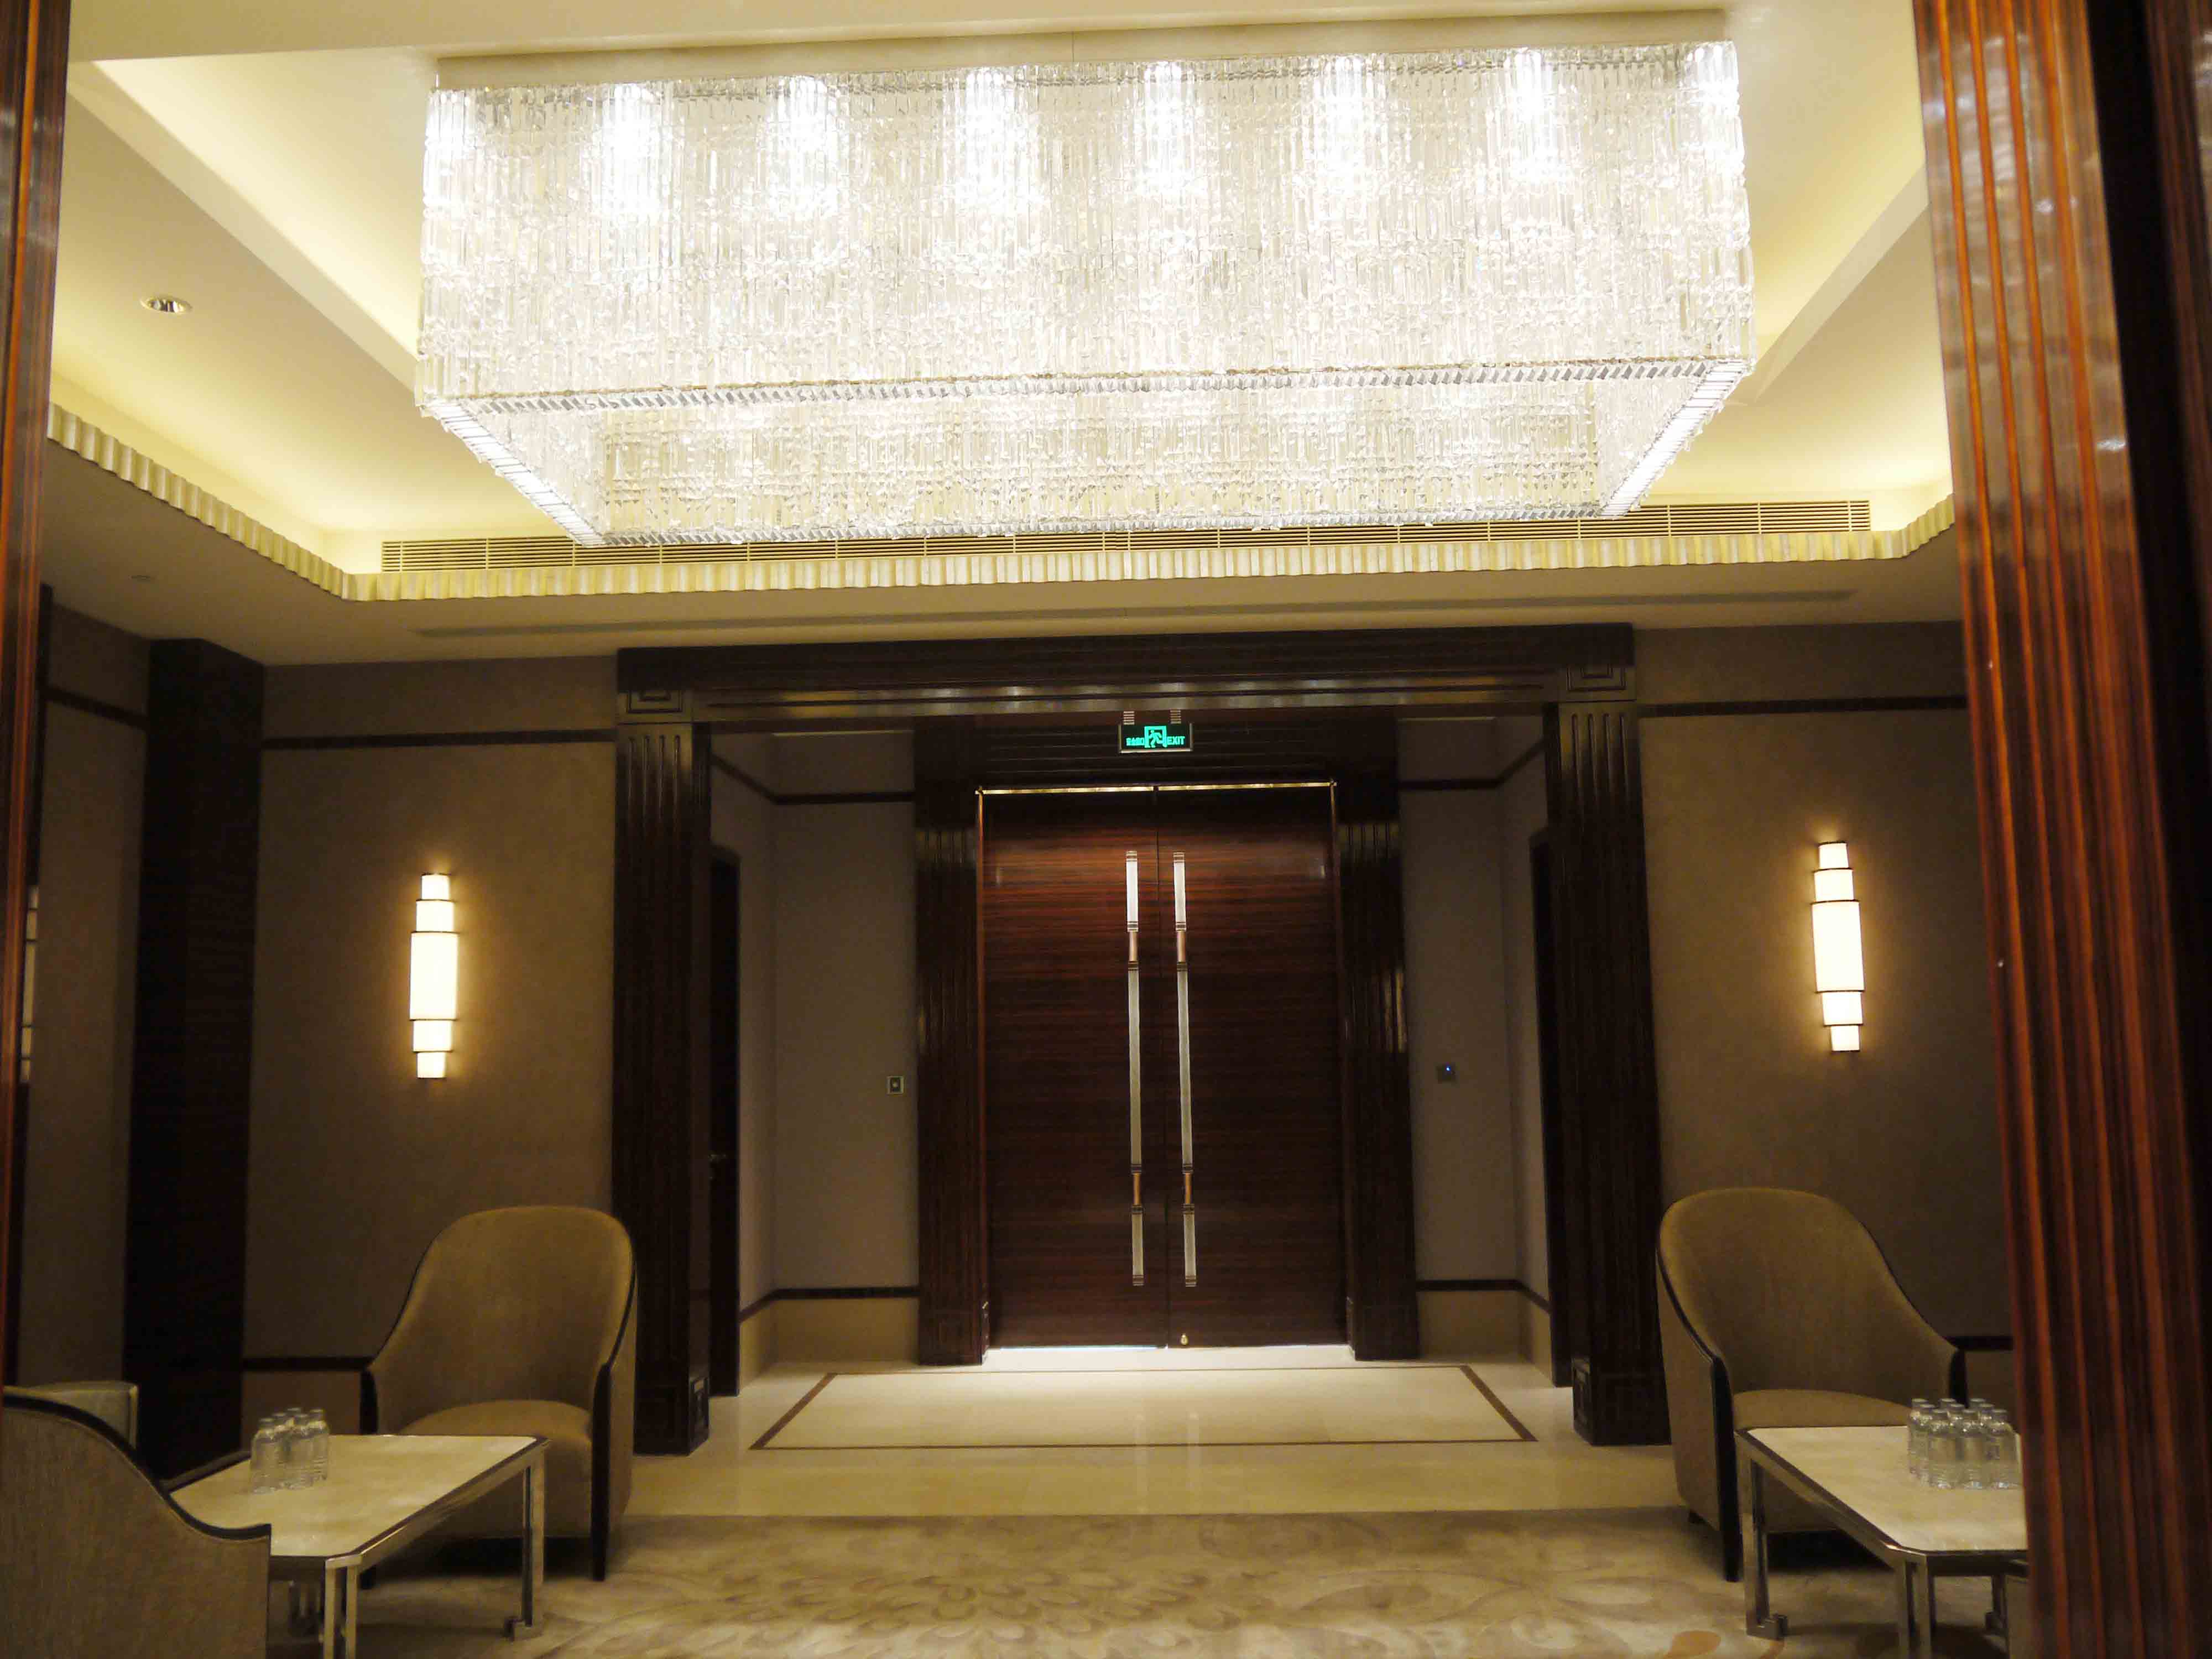 上海小南国花园酒店 - 酒店 - 解决方案 - 骊旻建筑照明设计上海有限公司